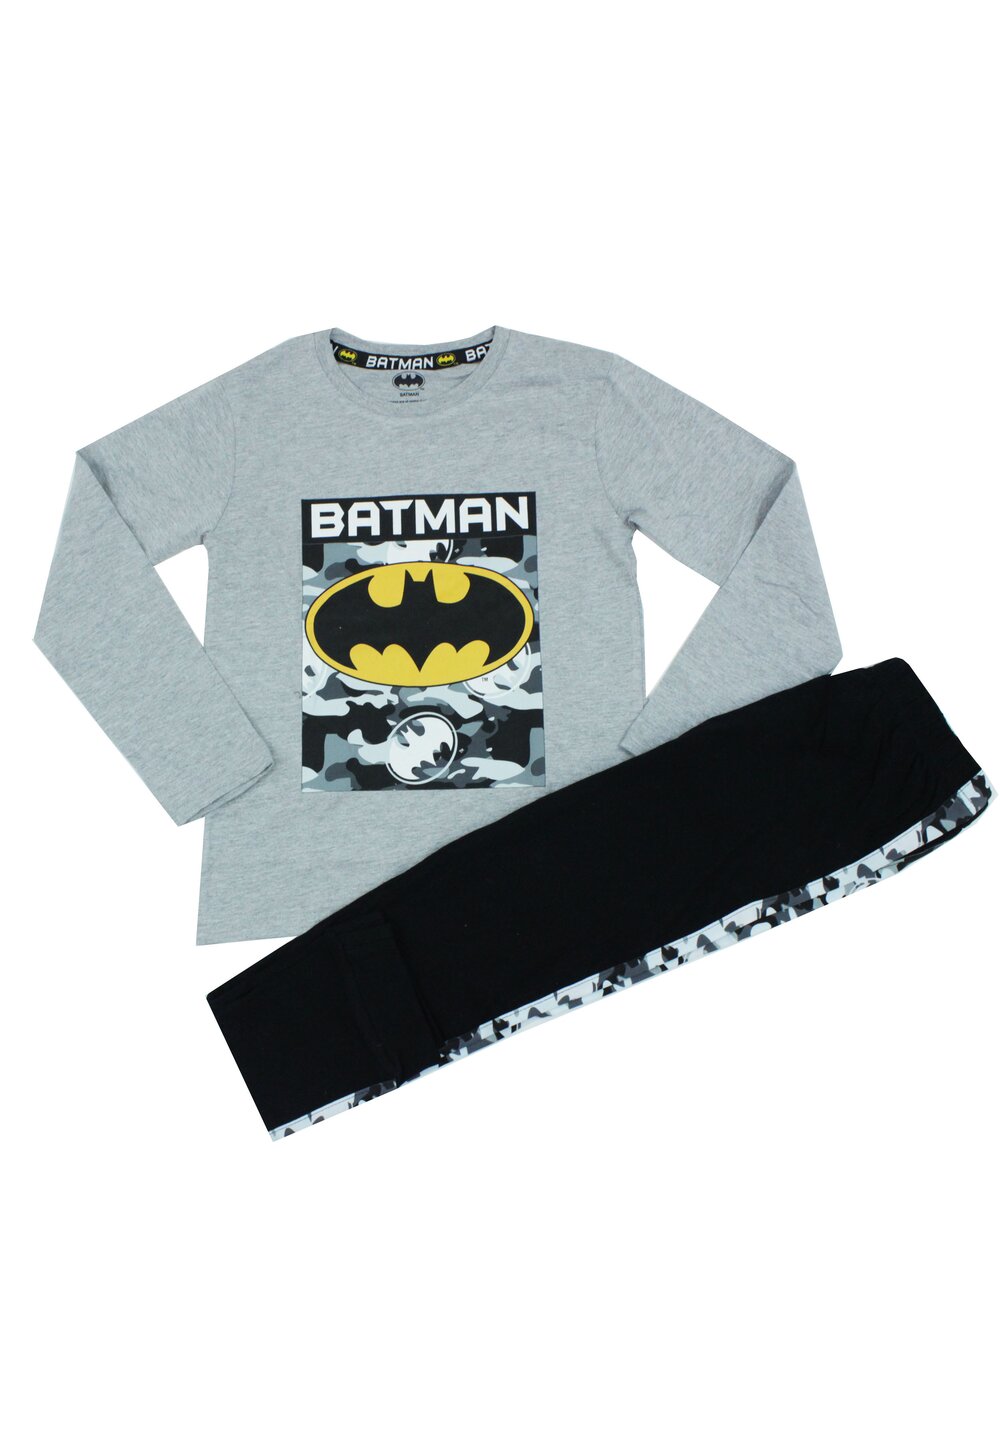 Pijama maneca lunga, bumbac 93%, Batman, gri 93%